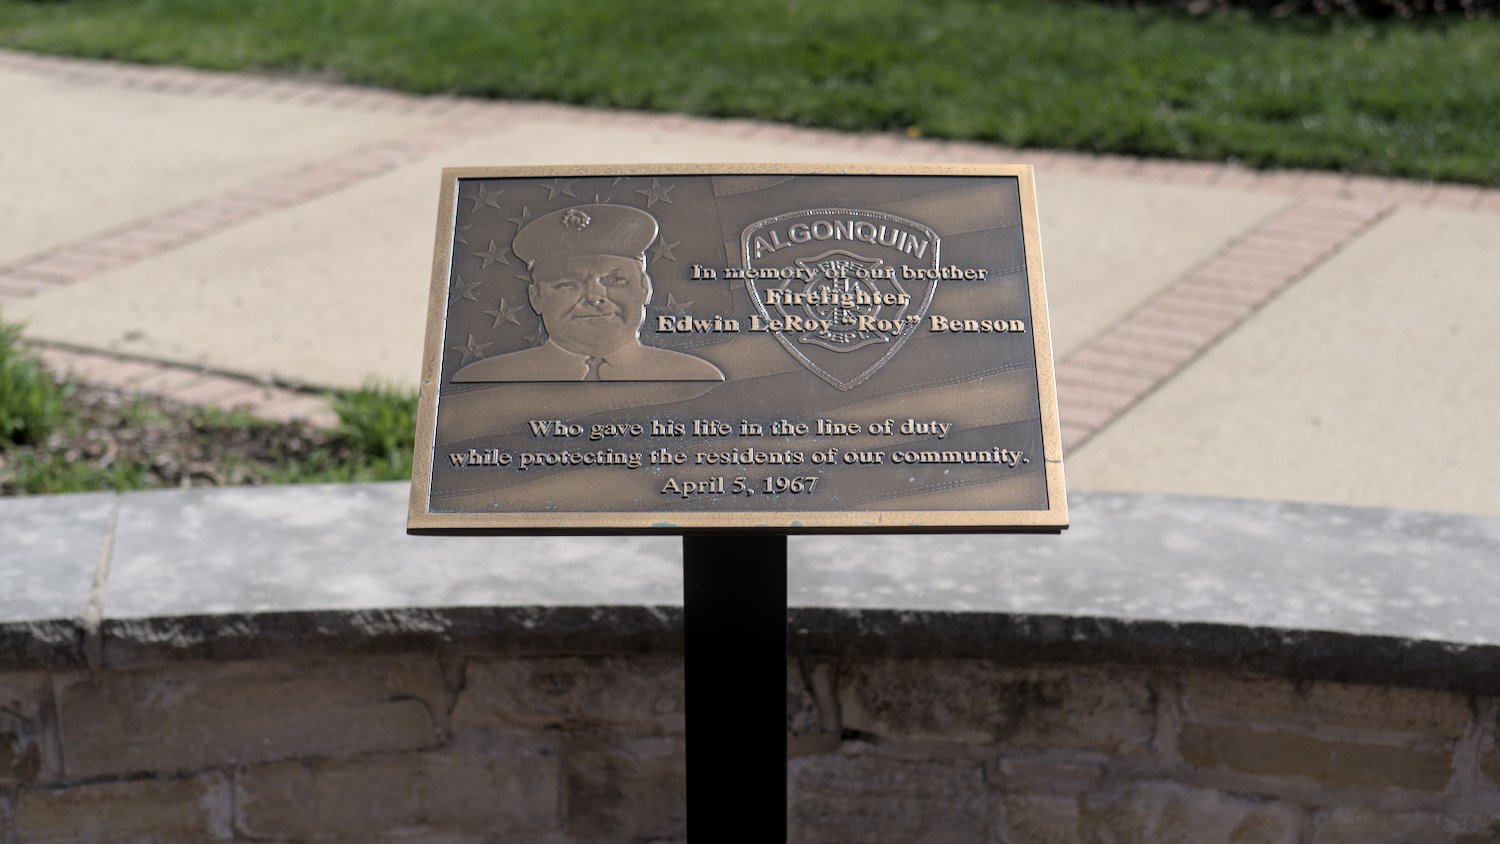 Bronze memorial plaque honoring firefighter Edwin LeRoy "Roy" Benson.